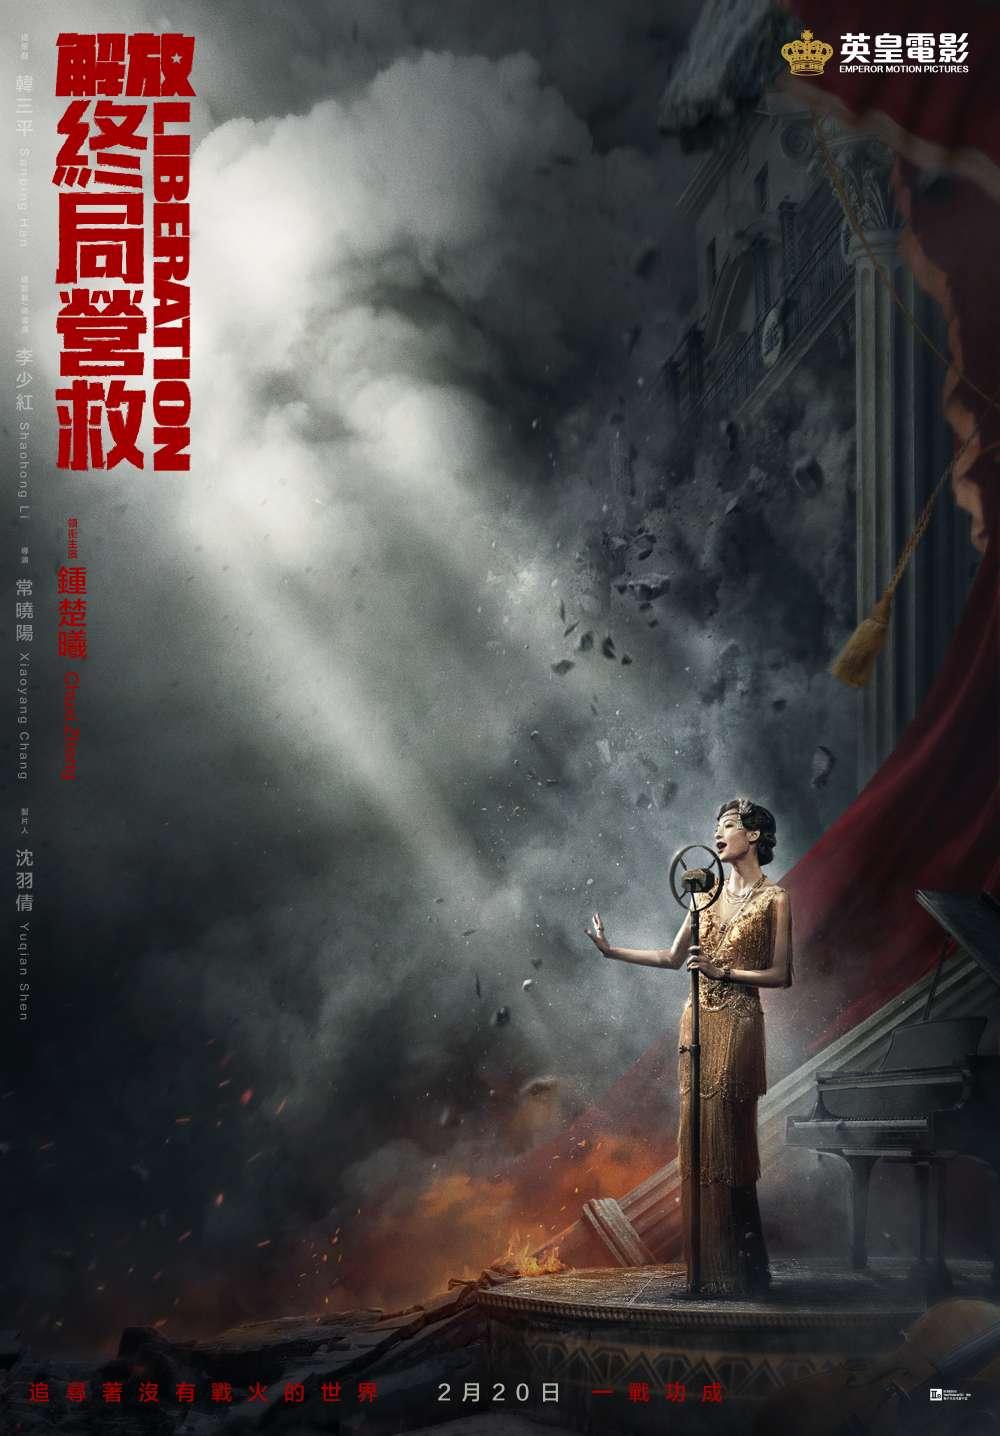 Hong Kong Character Poster #1